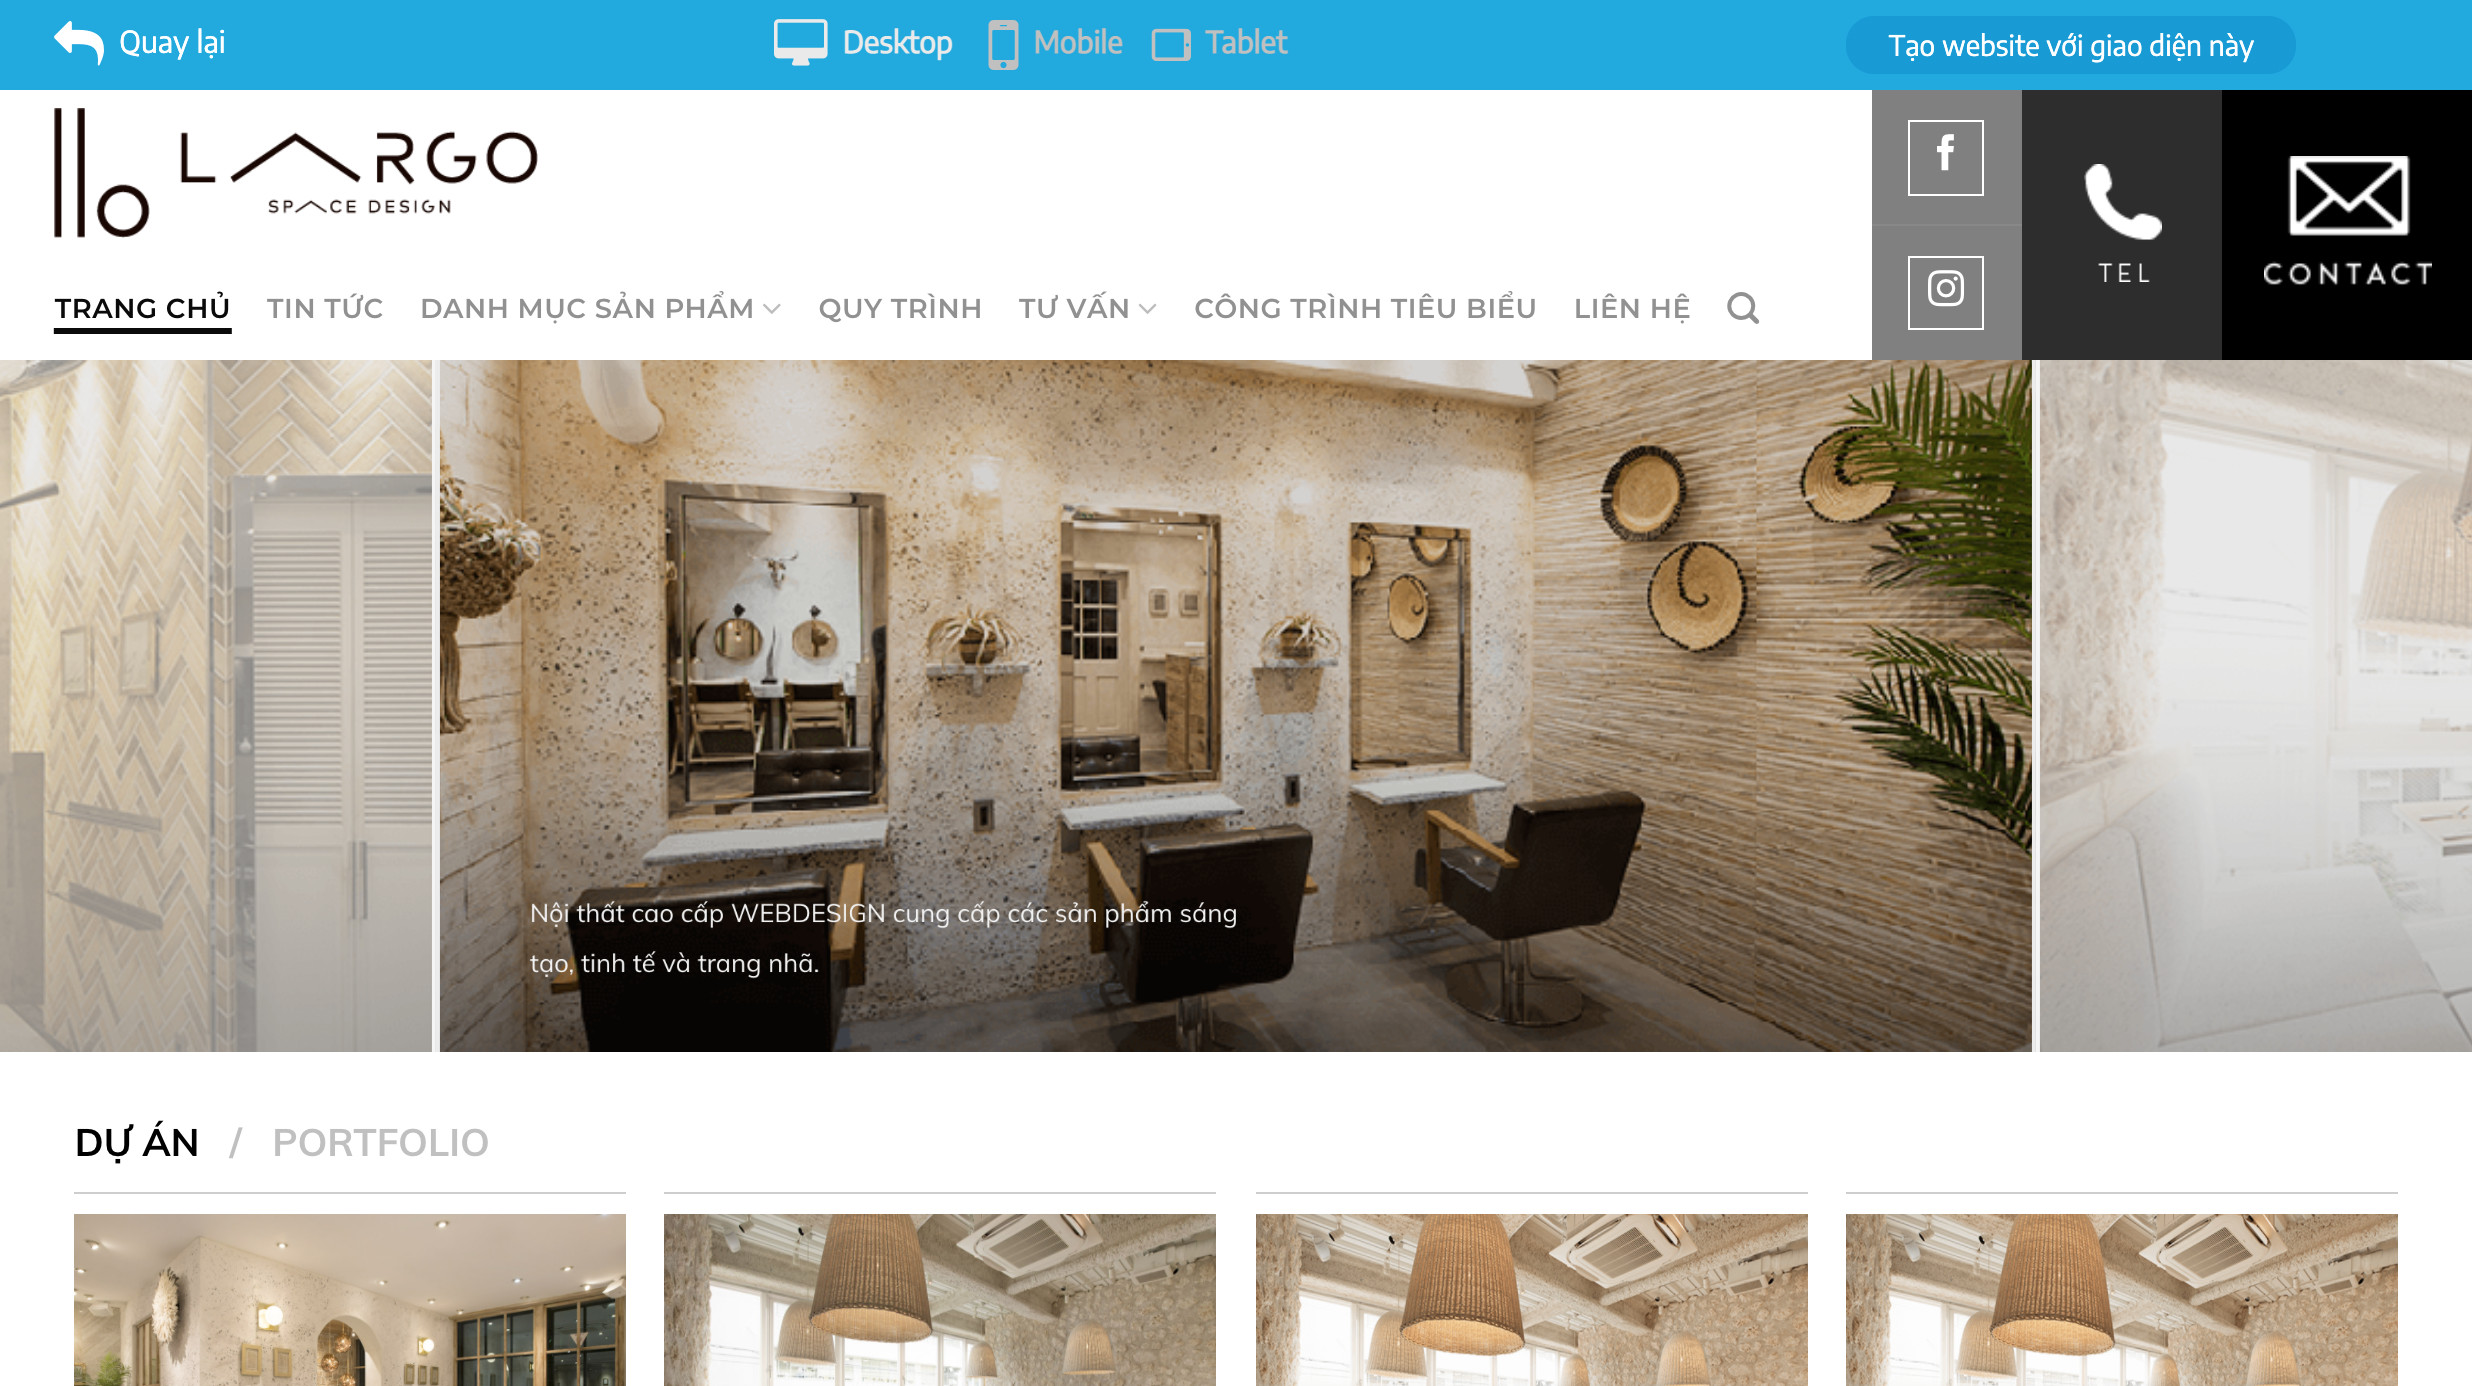 Thiết kế web cho ngành nội thất sang trọng, đẹp mắt.